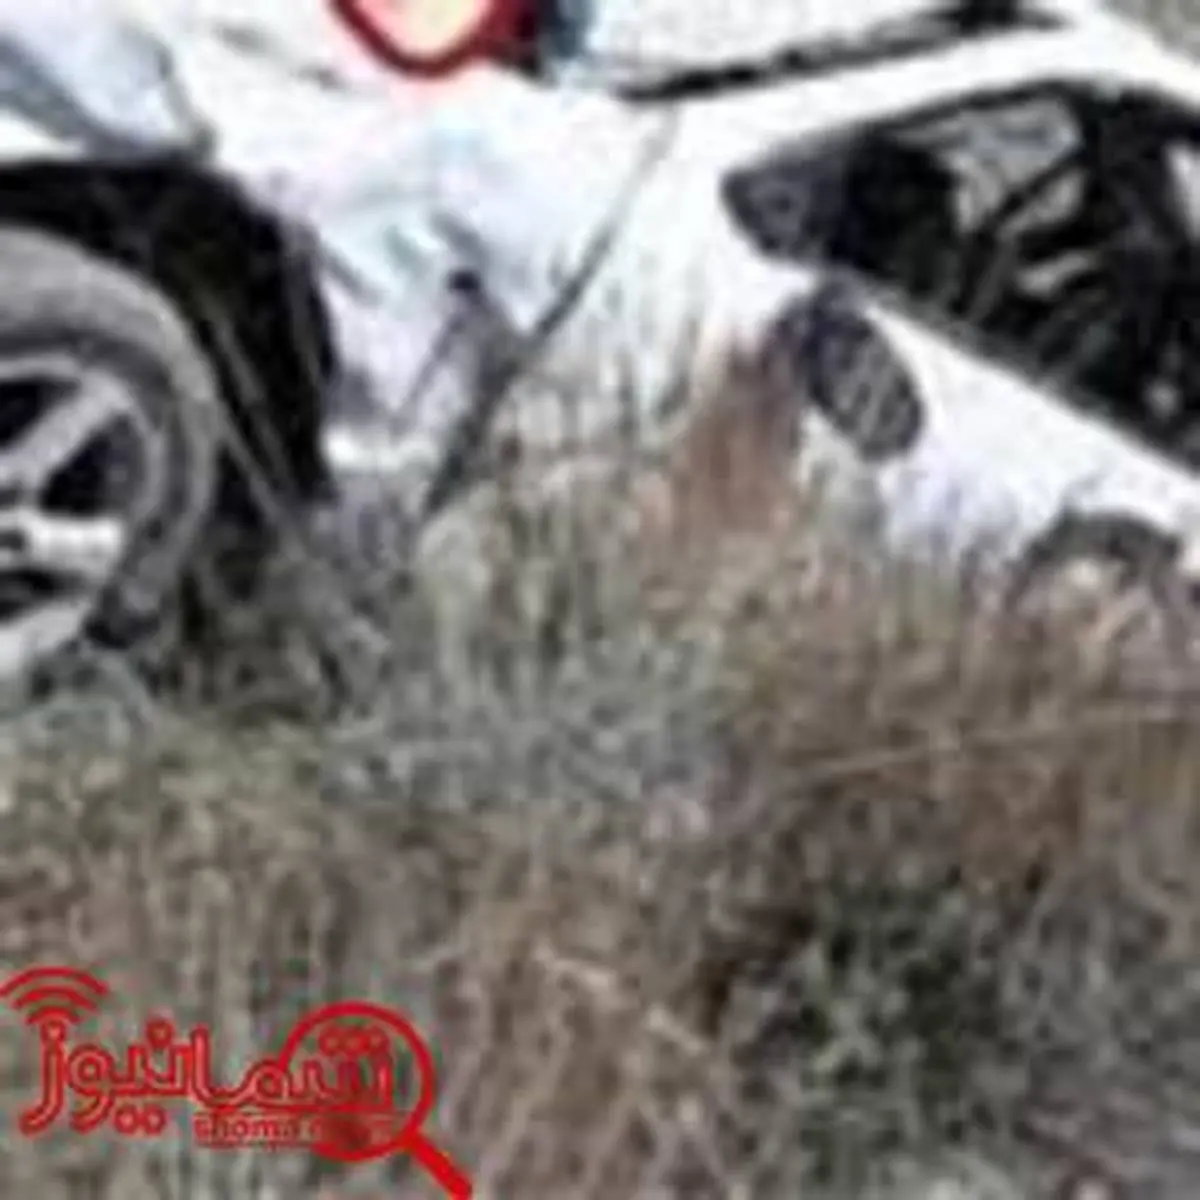 آمار مصدومان حوادث رانندگی در اردیبهشت ۹۷